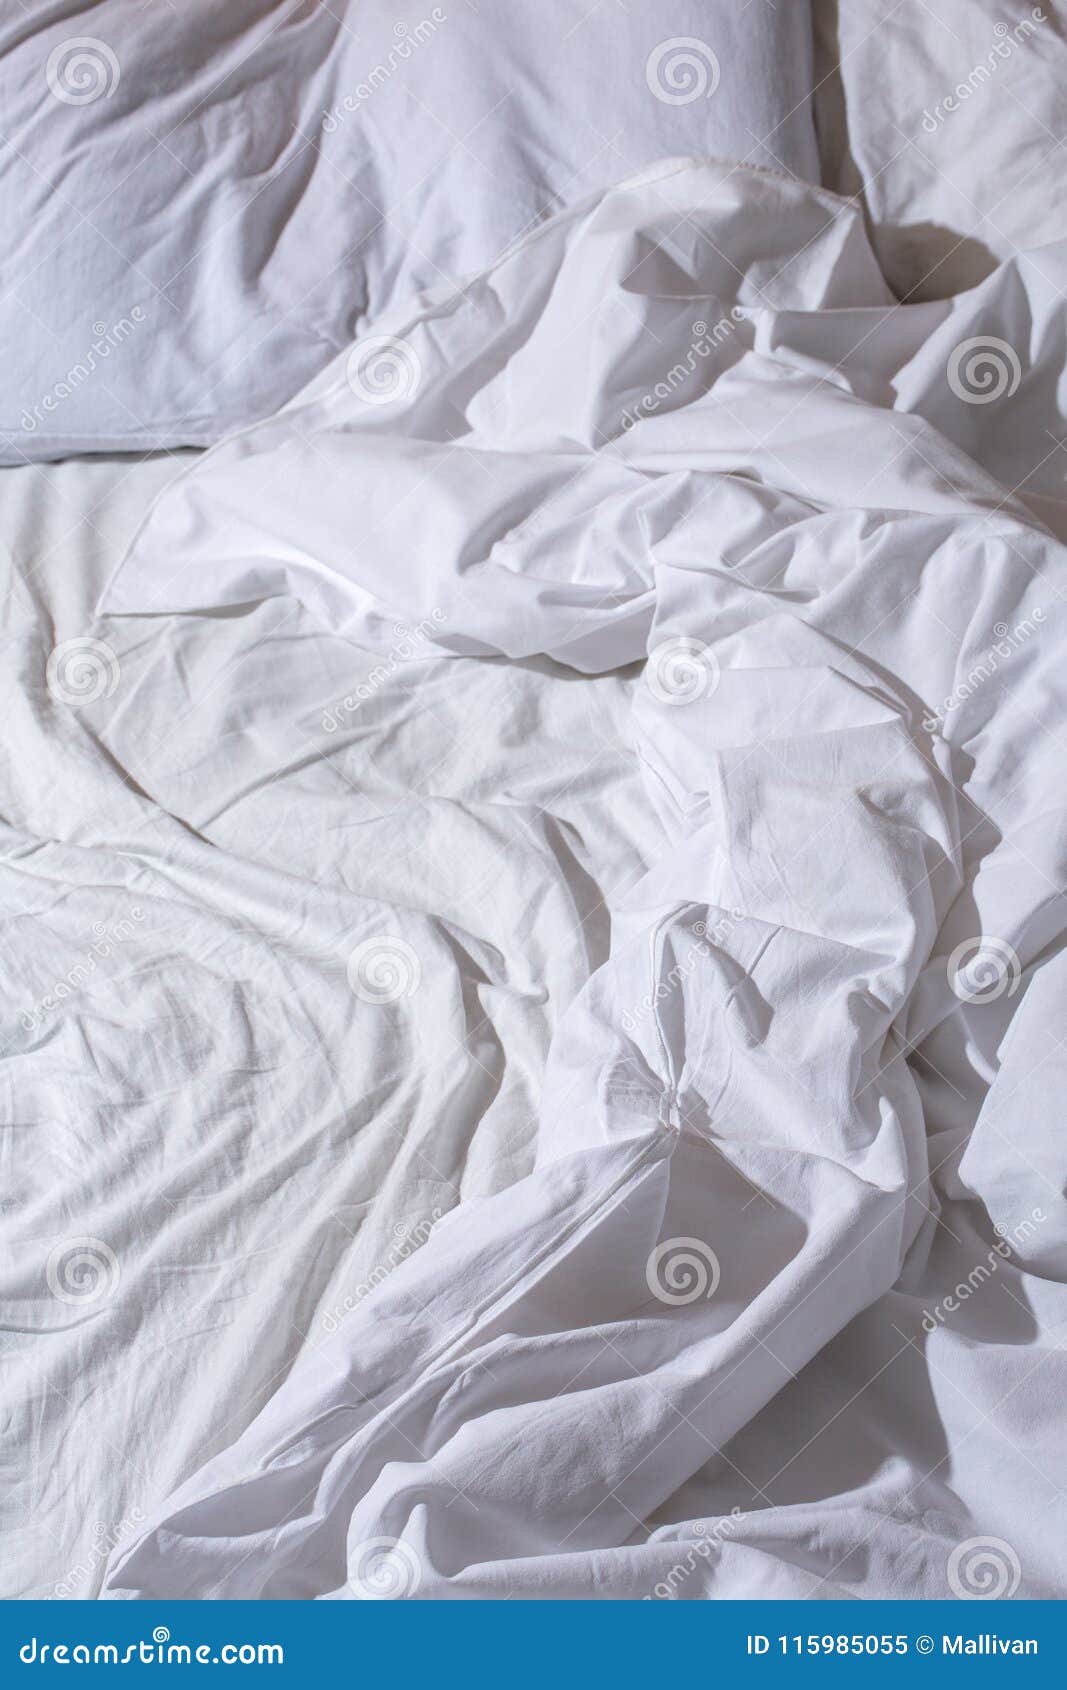 Мятая кровать. Мятая кровать сверху. Белое одеяло на кровати скомканное. Помятое одеяло. До скрытых встреч на мятых простынях